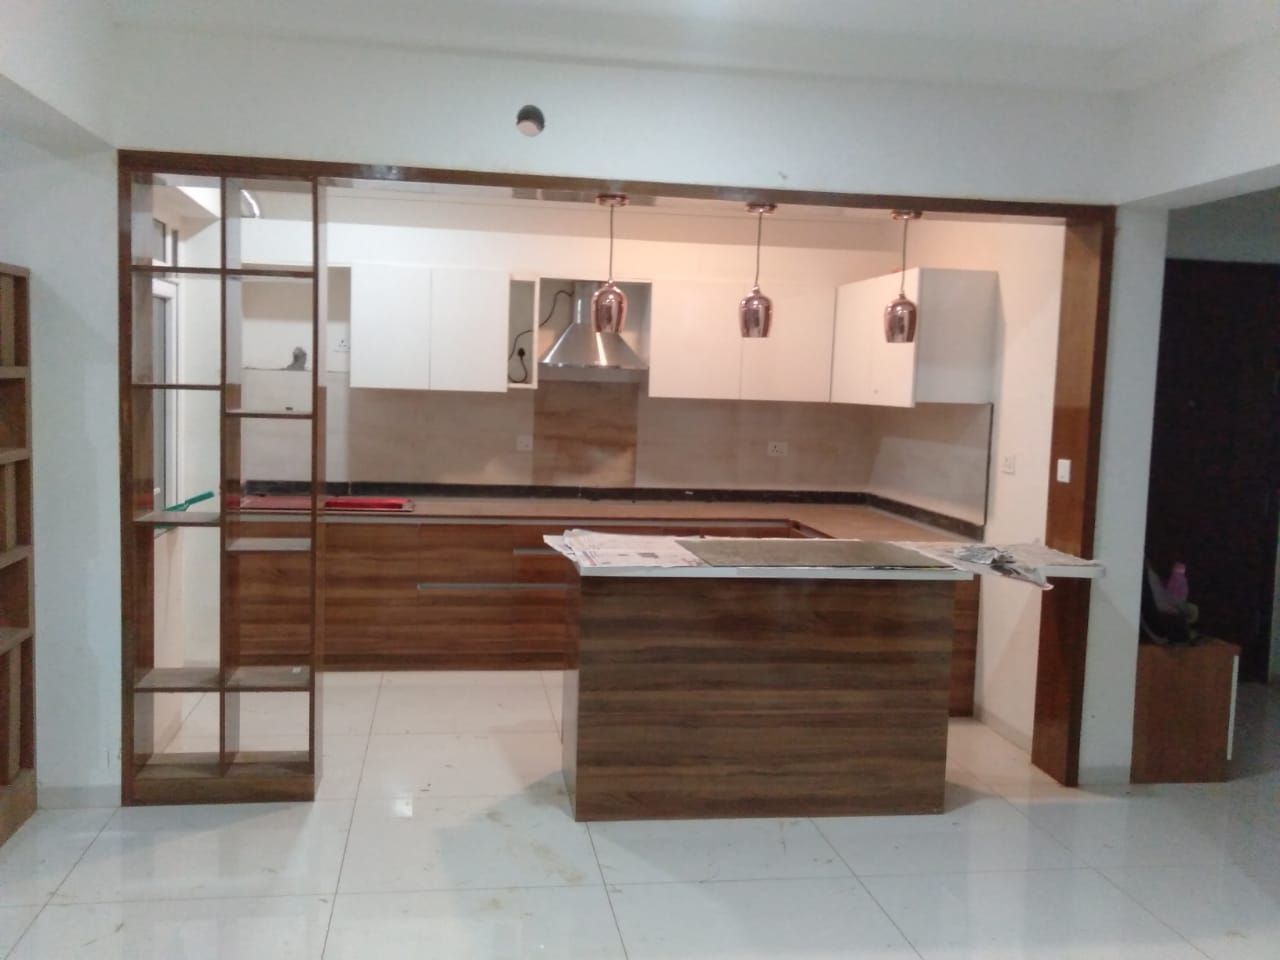 Mr.Unnikrishnan's Residence, Urban Forest, Whitefield, Bangalore, Design Space Design Space Cocinas modernas: Ideas, imágenes y decoración Contrachapado Estanterías y despensas